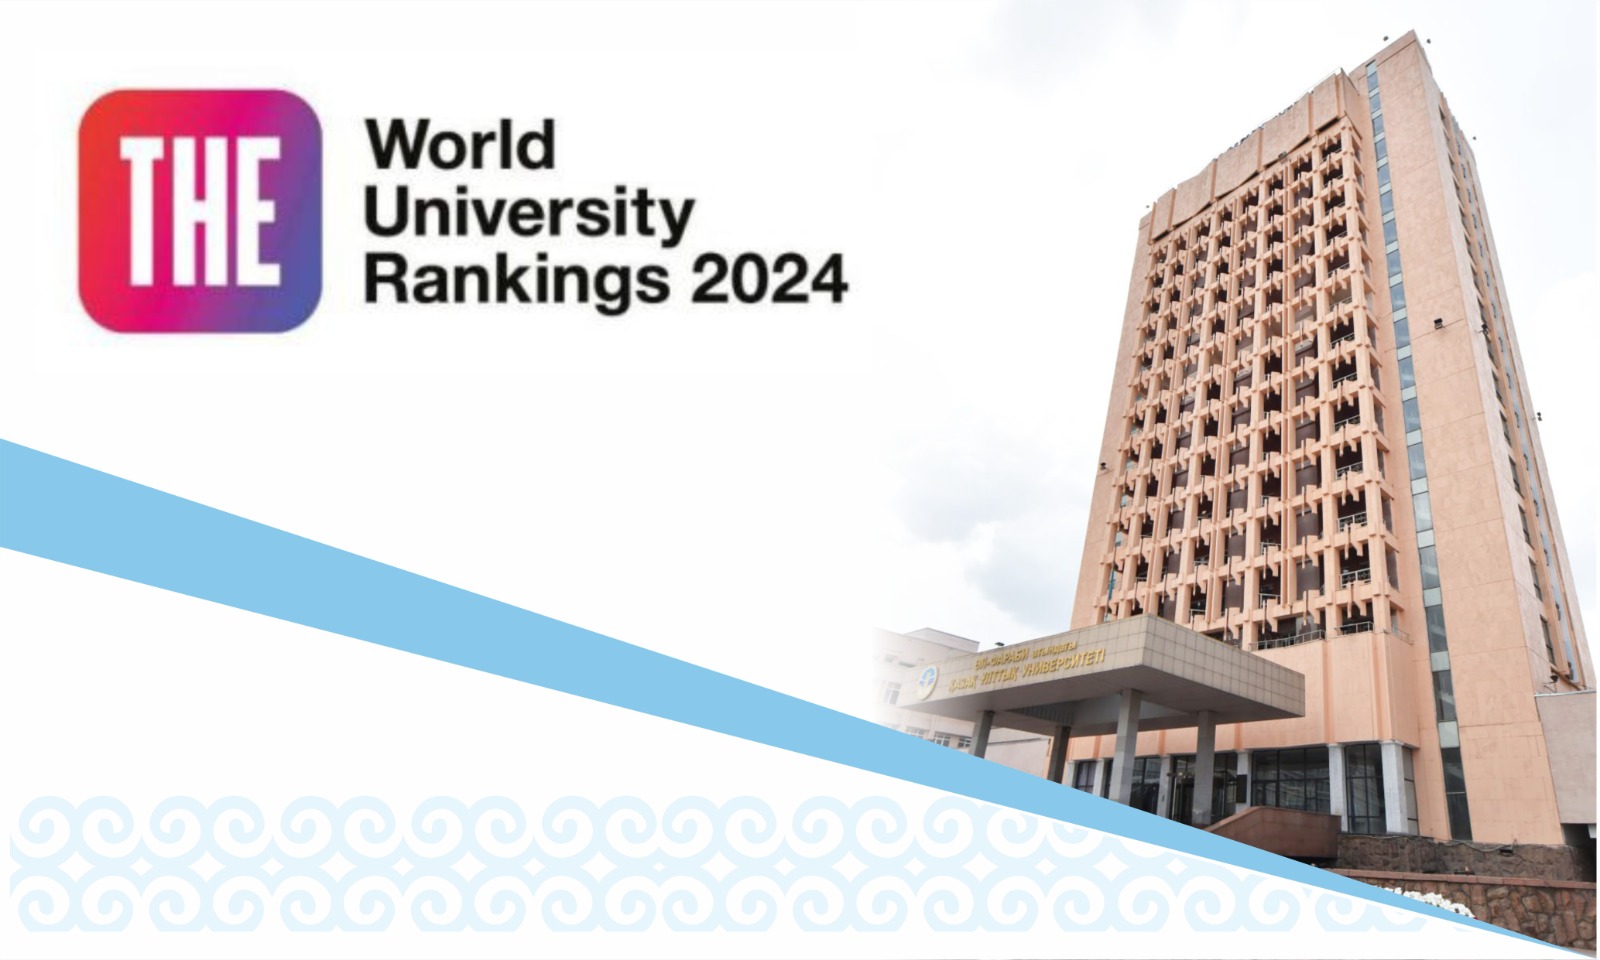 ҚазҰУ Times Higher Education World University Rankings - 2024 рейтингінде көрсеткіштерін жақсартты